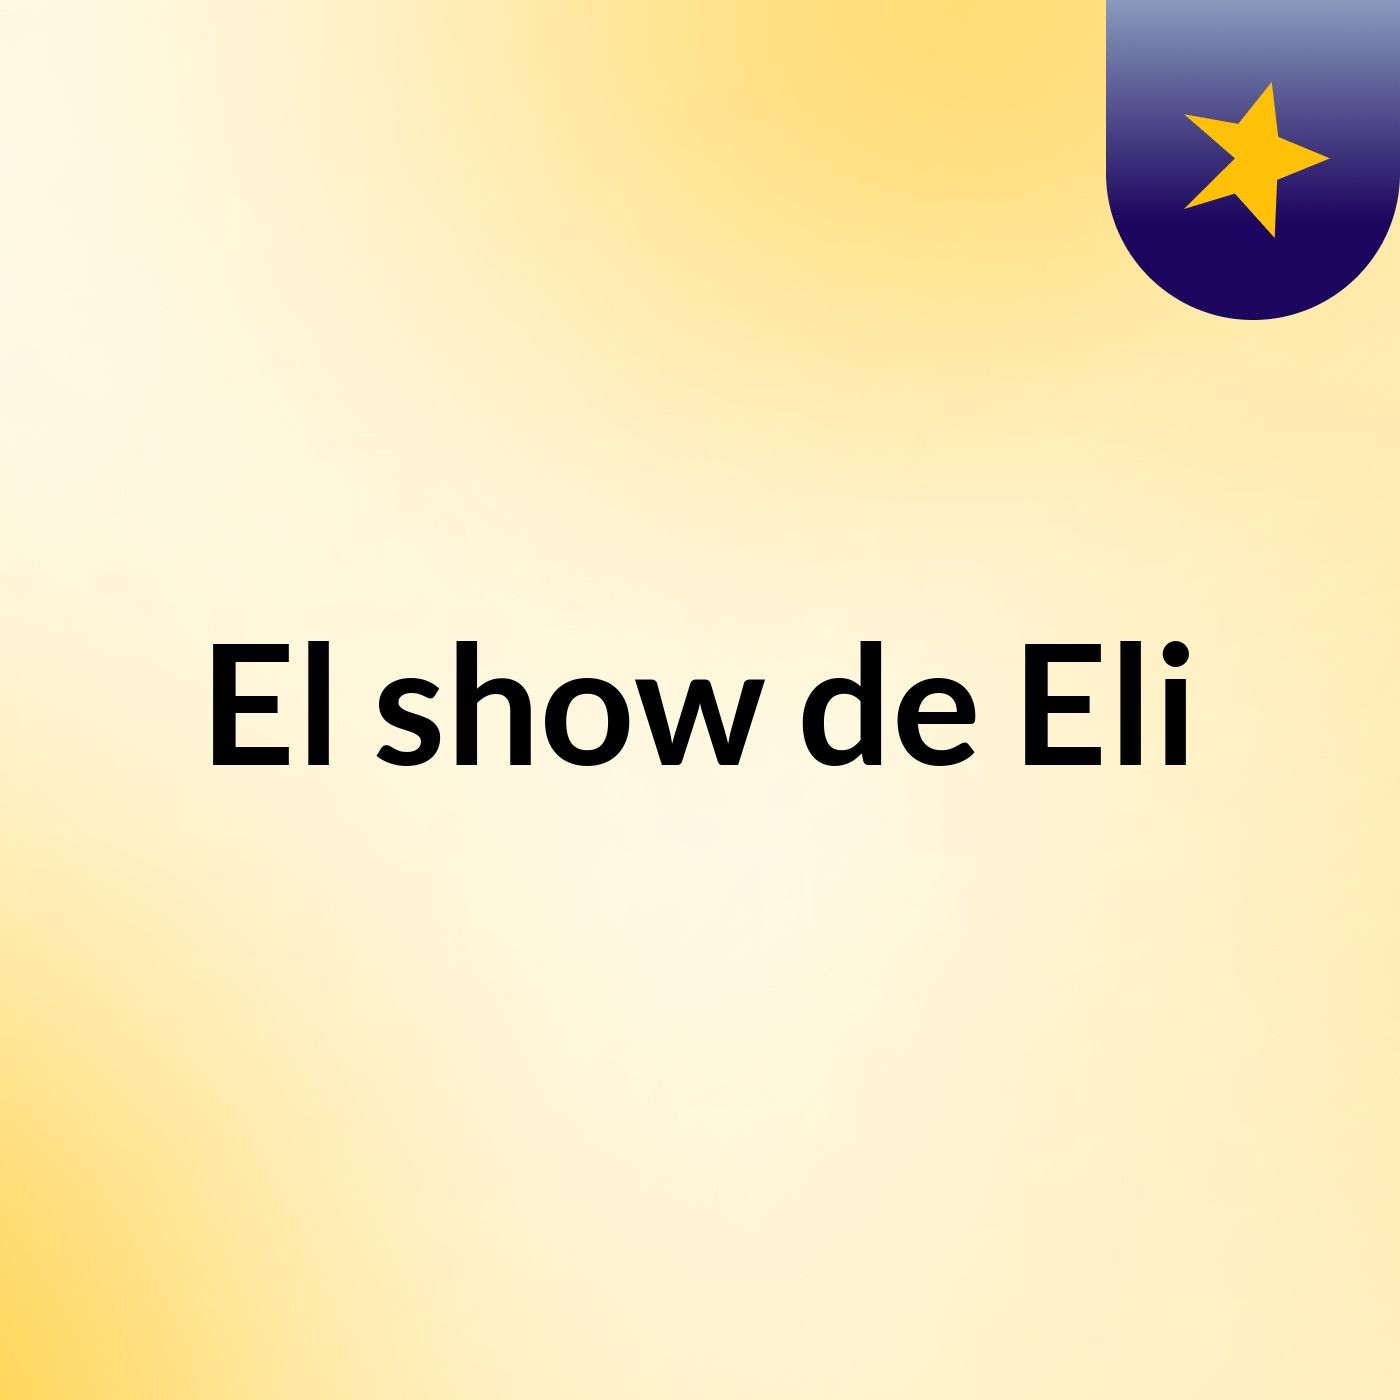 El show de Eli